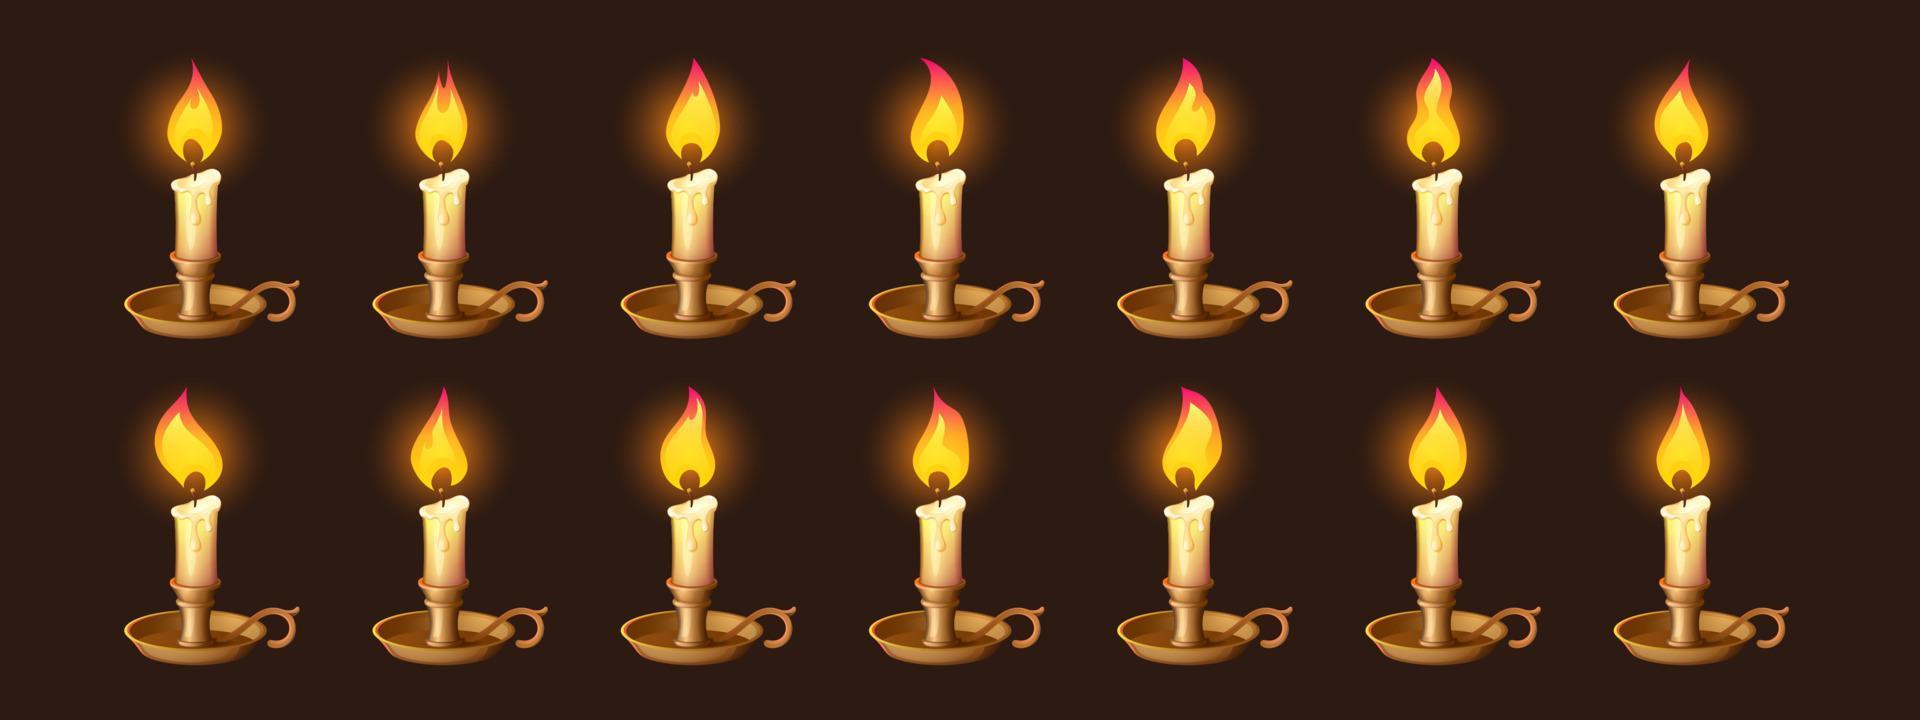 dessin animé brûlant des bougies dans l'animation de chandelier vecteur